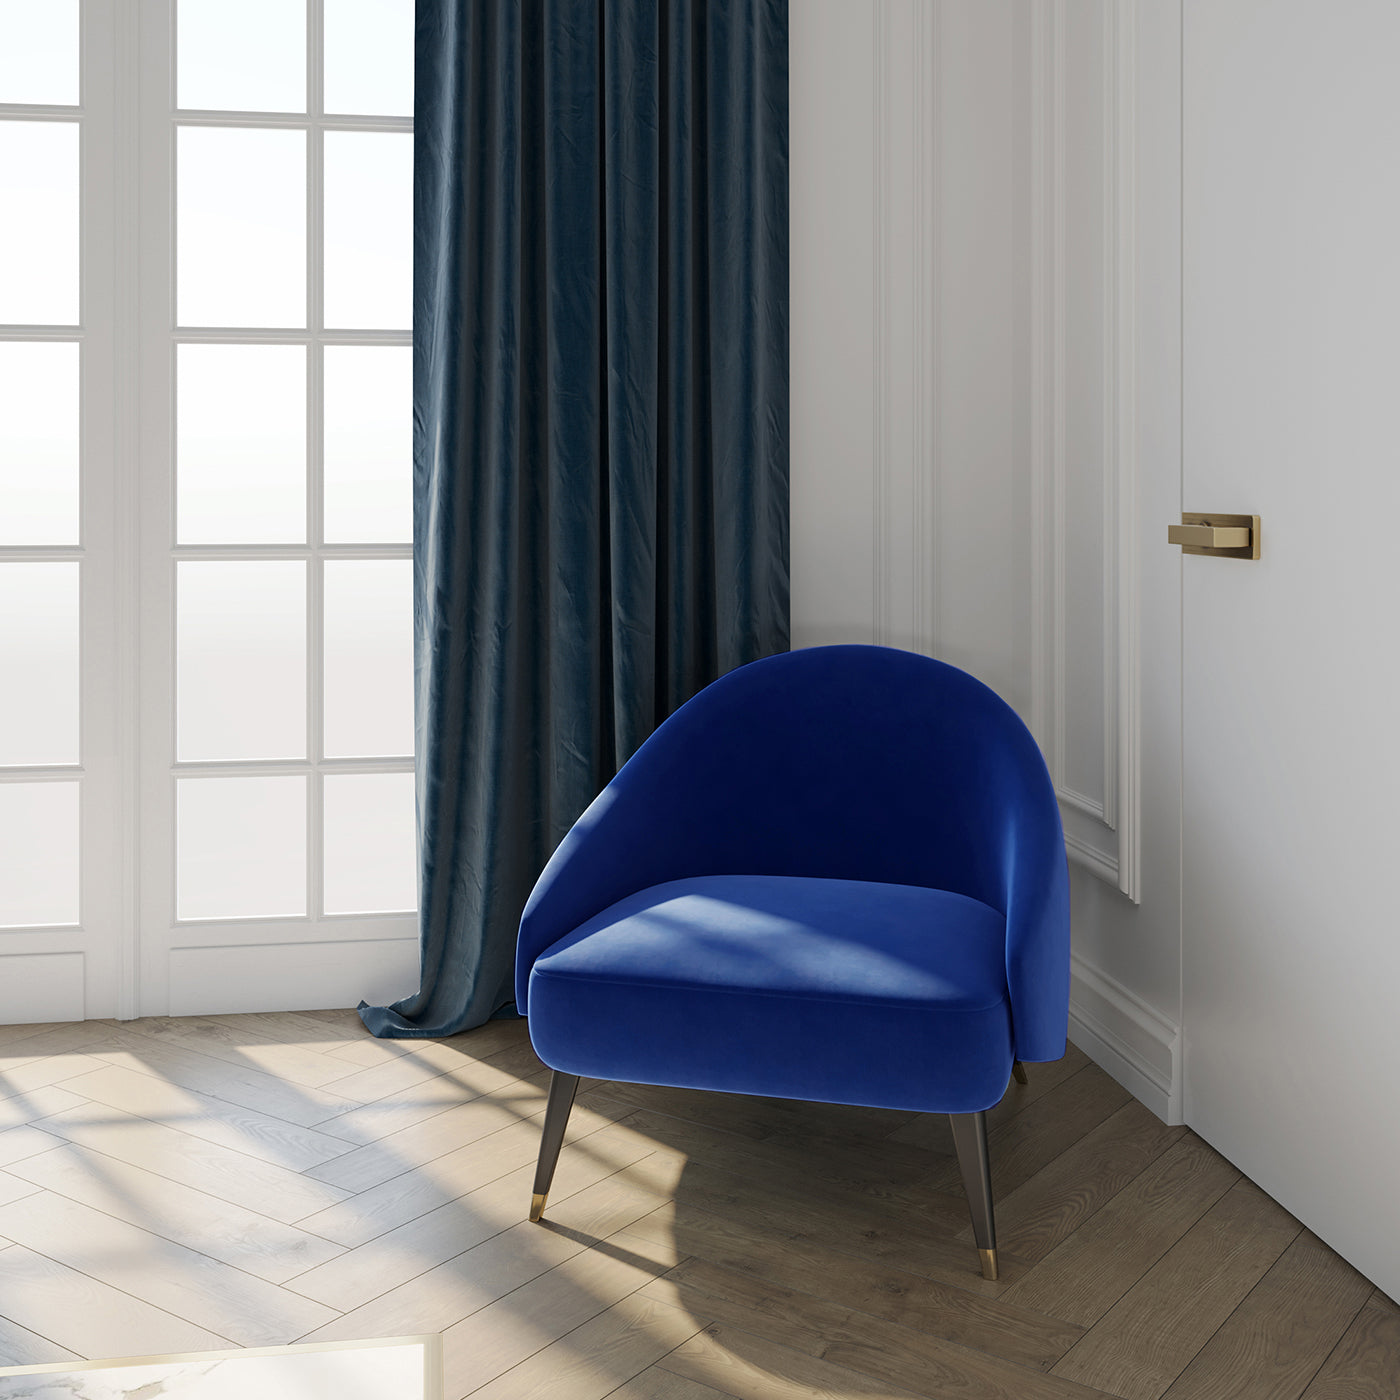 Minerva Blue armchair - Alternative view 1